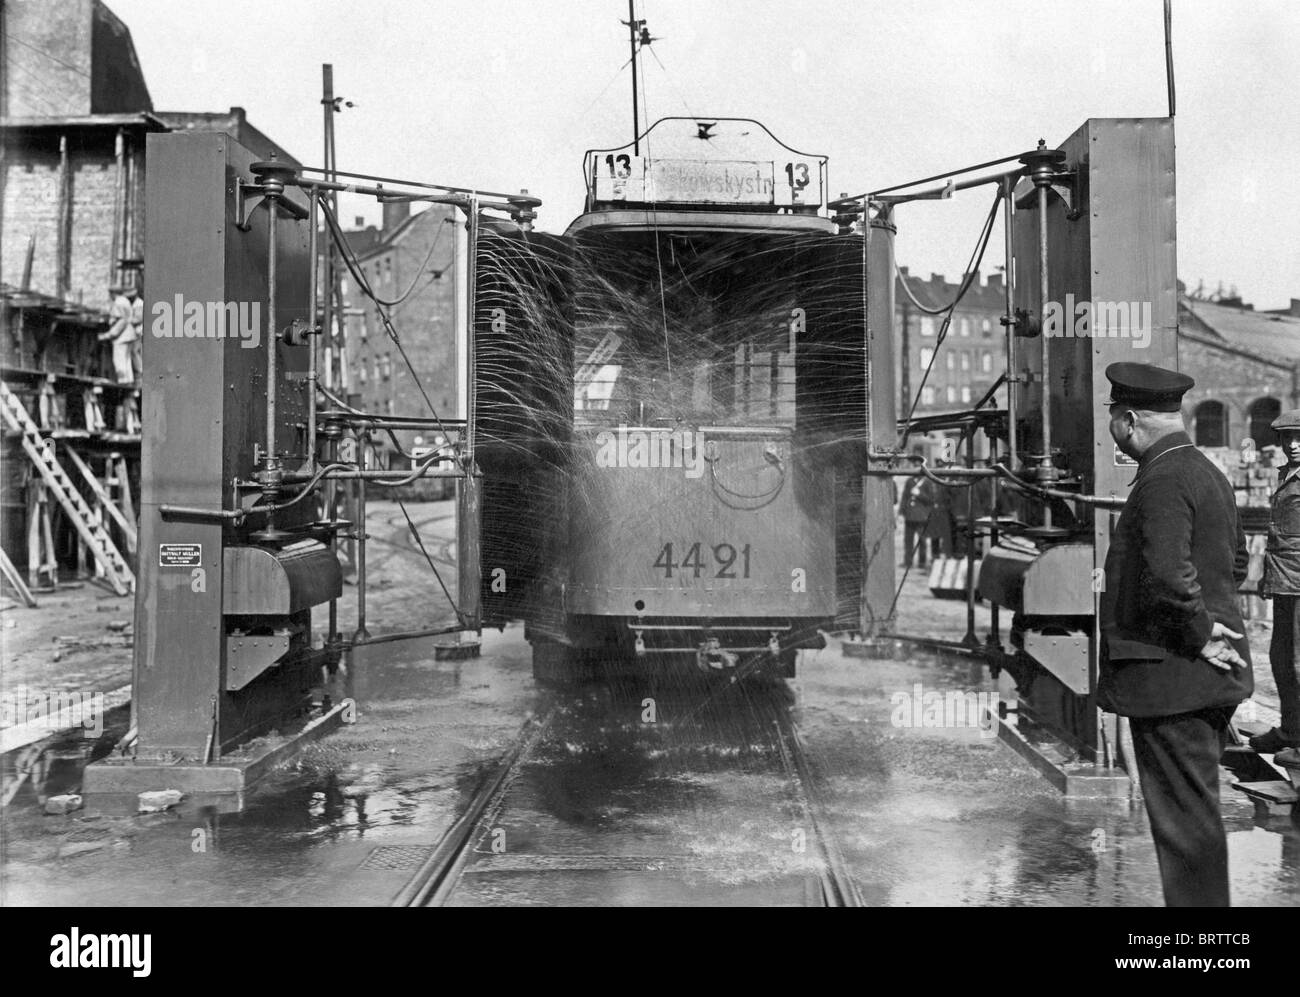 Impianto per il lavaggio di tram, immagine storica, 1925, Berlino, Germania, Europa Foto Stock